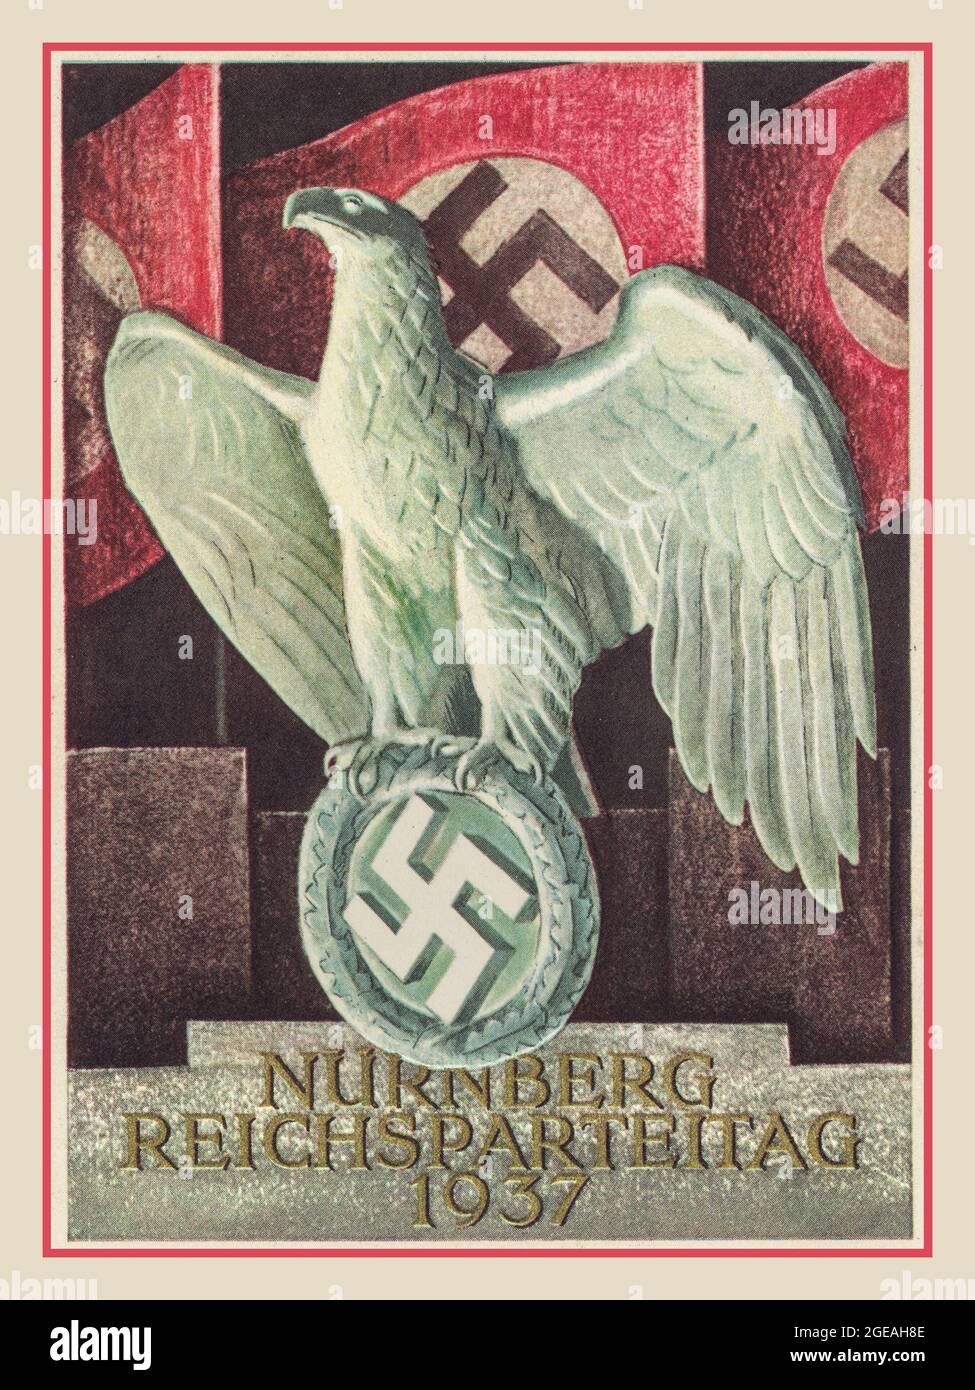 Vintage Nazi Propaganda Poster NURNBERG REICHSPARTEITAG 1937 avec l'aigle allemand tenant le symbole de la croix gammée brillant avec des drapeaux de la croix gammée en arrière-plan. Banque D'Images